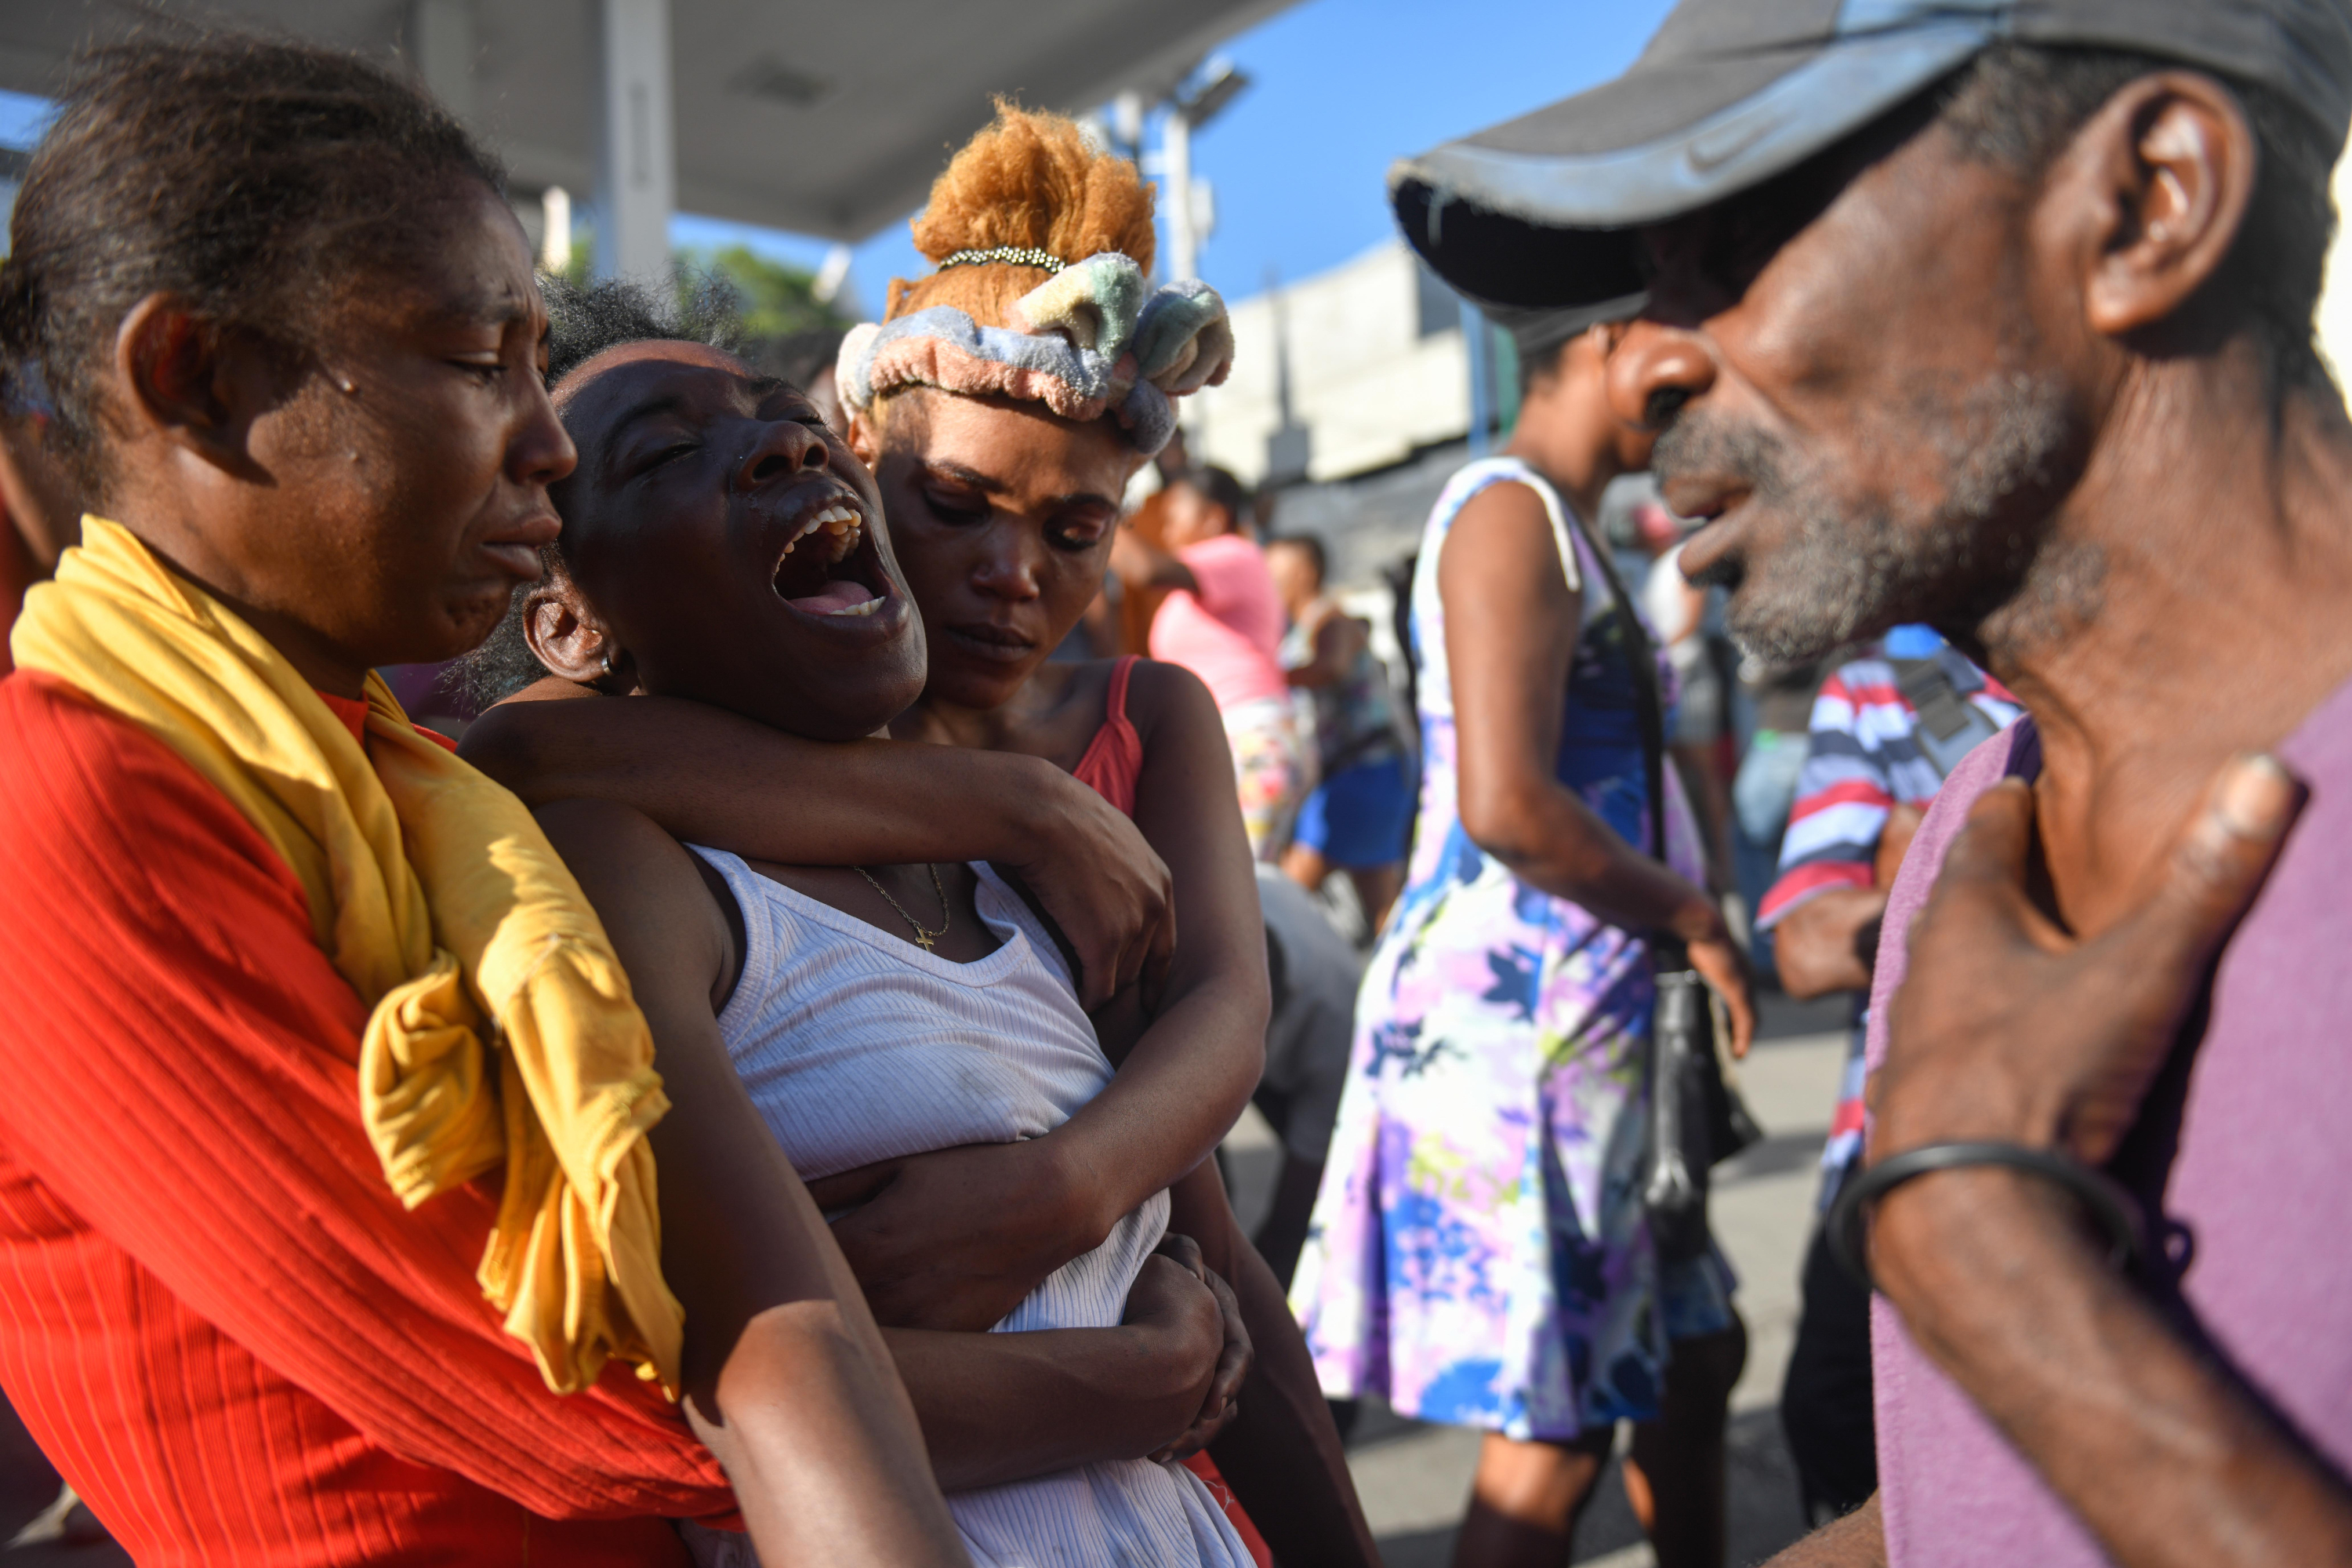 Una mujer reacciona luego de ver el cadáver de un familiar en la calle este lunes, en Puerto Príncipe (Haití). Doce cadáveres fueron encontrados este lunes en Petion-Ville, en las colinas de Puerto Príncipe, en circunstancias aún por aclarar, como la identidad de las víctimas, que no se descarta sean miembros de bandas armadas abatidos por la Policía Nacional. Los cuerpos, entre ellos el de una mujer, fueron hallados dispersos en plena vía, en los alrededores de una zona dedicada al comercio informal de alimentos y otros productos. EFE/ Johnson Sabin